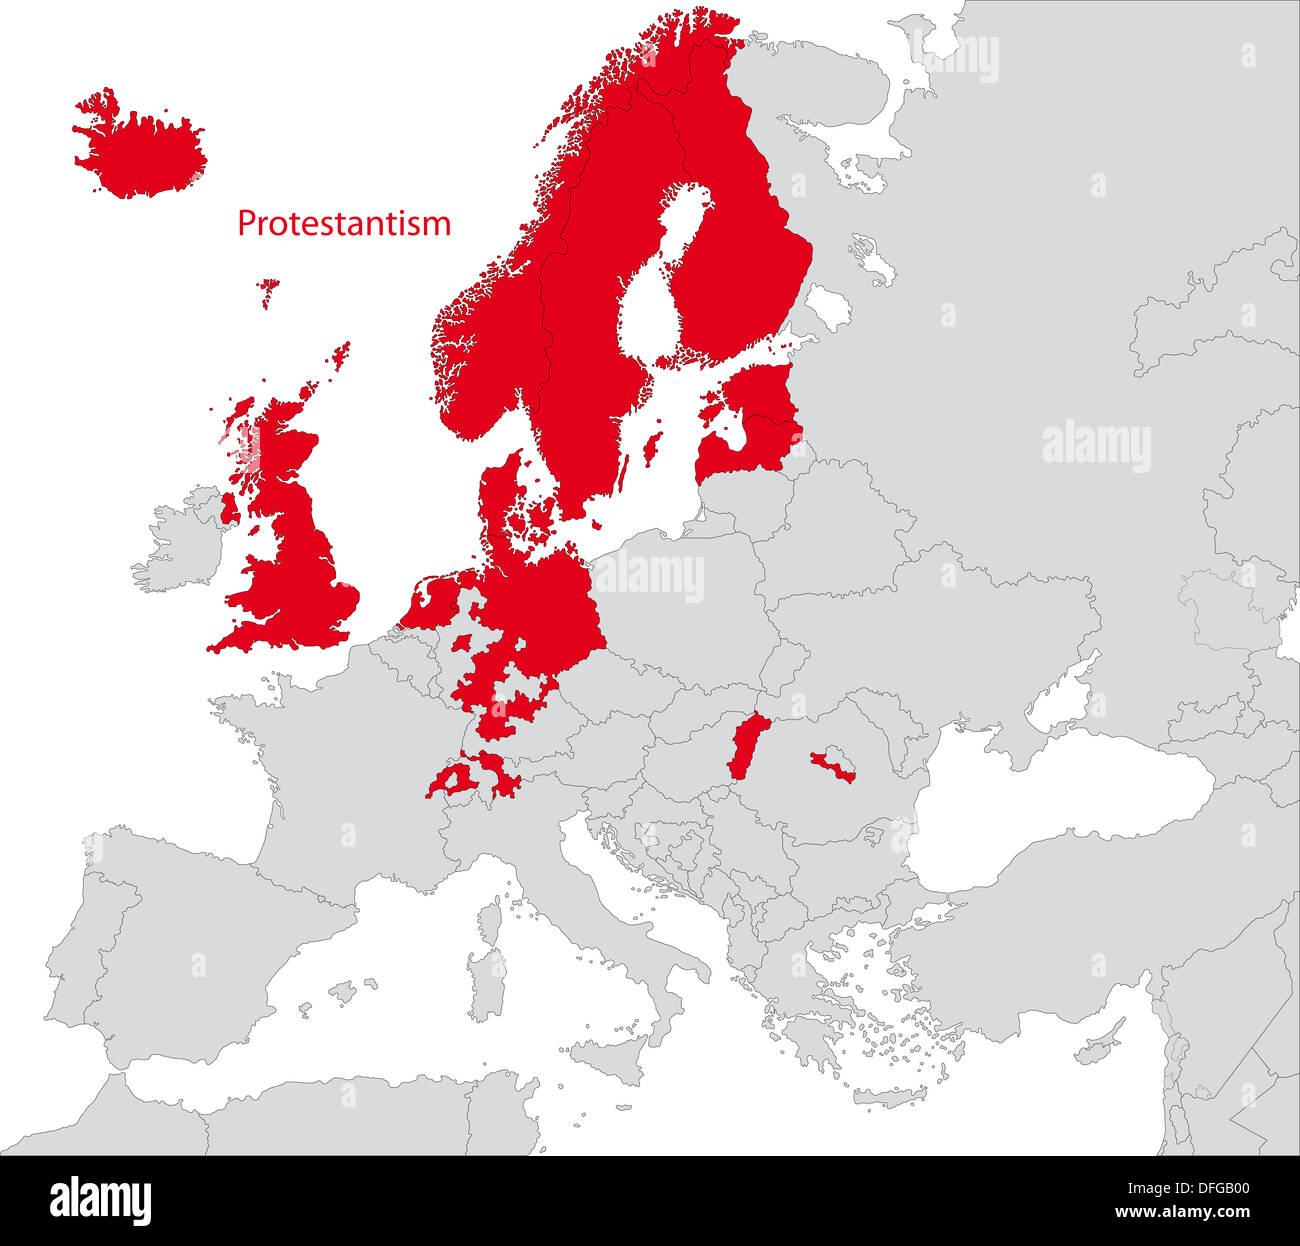 Protestantismus in Europa Stockfoto